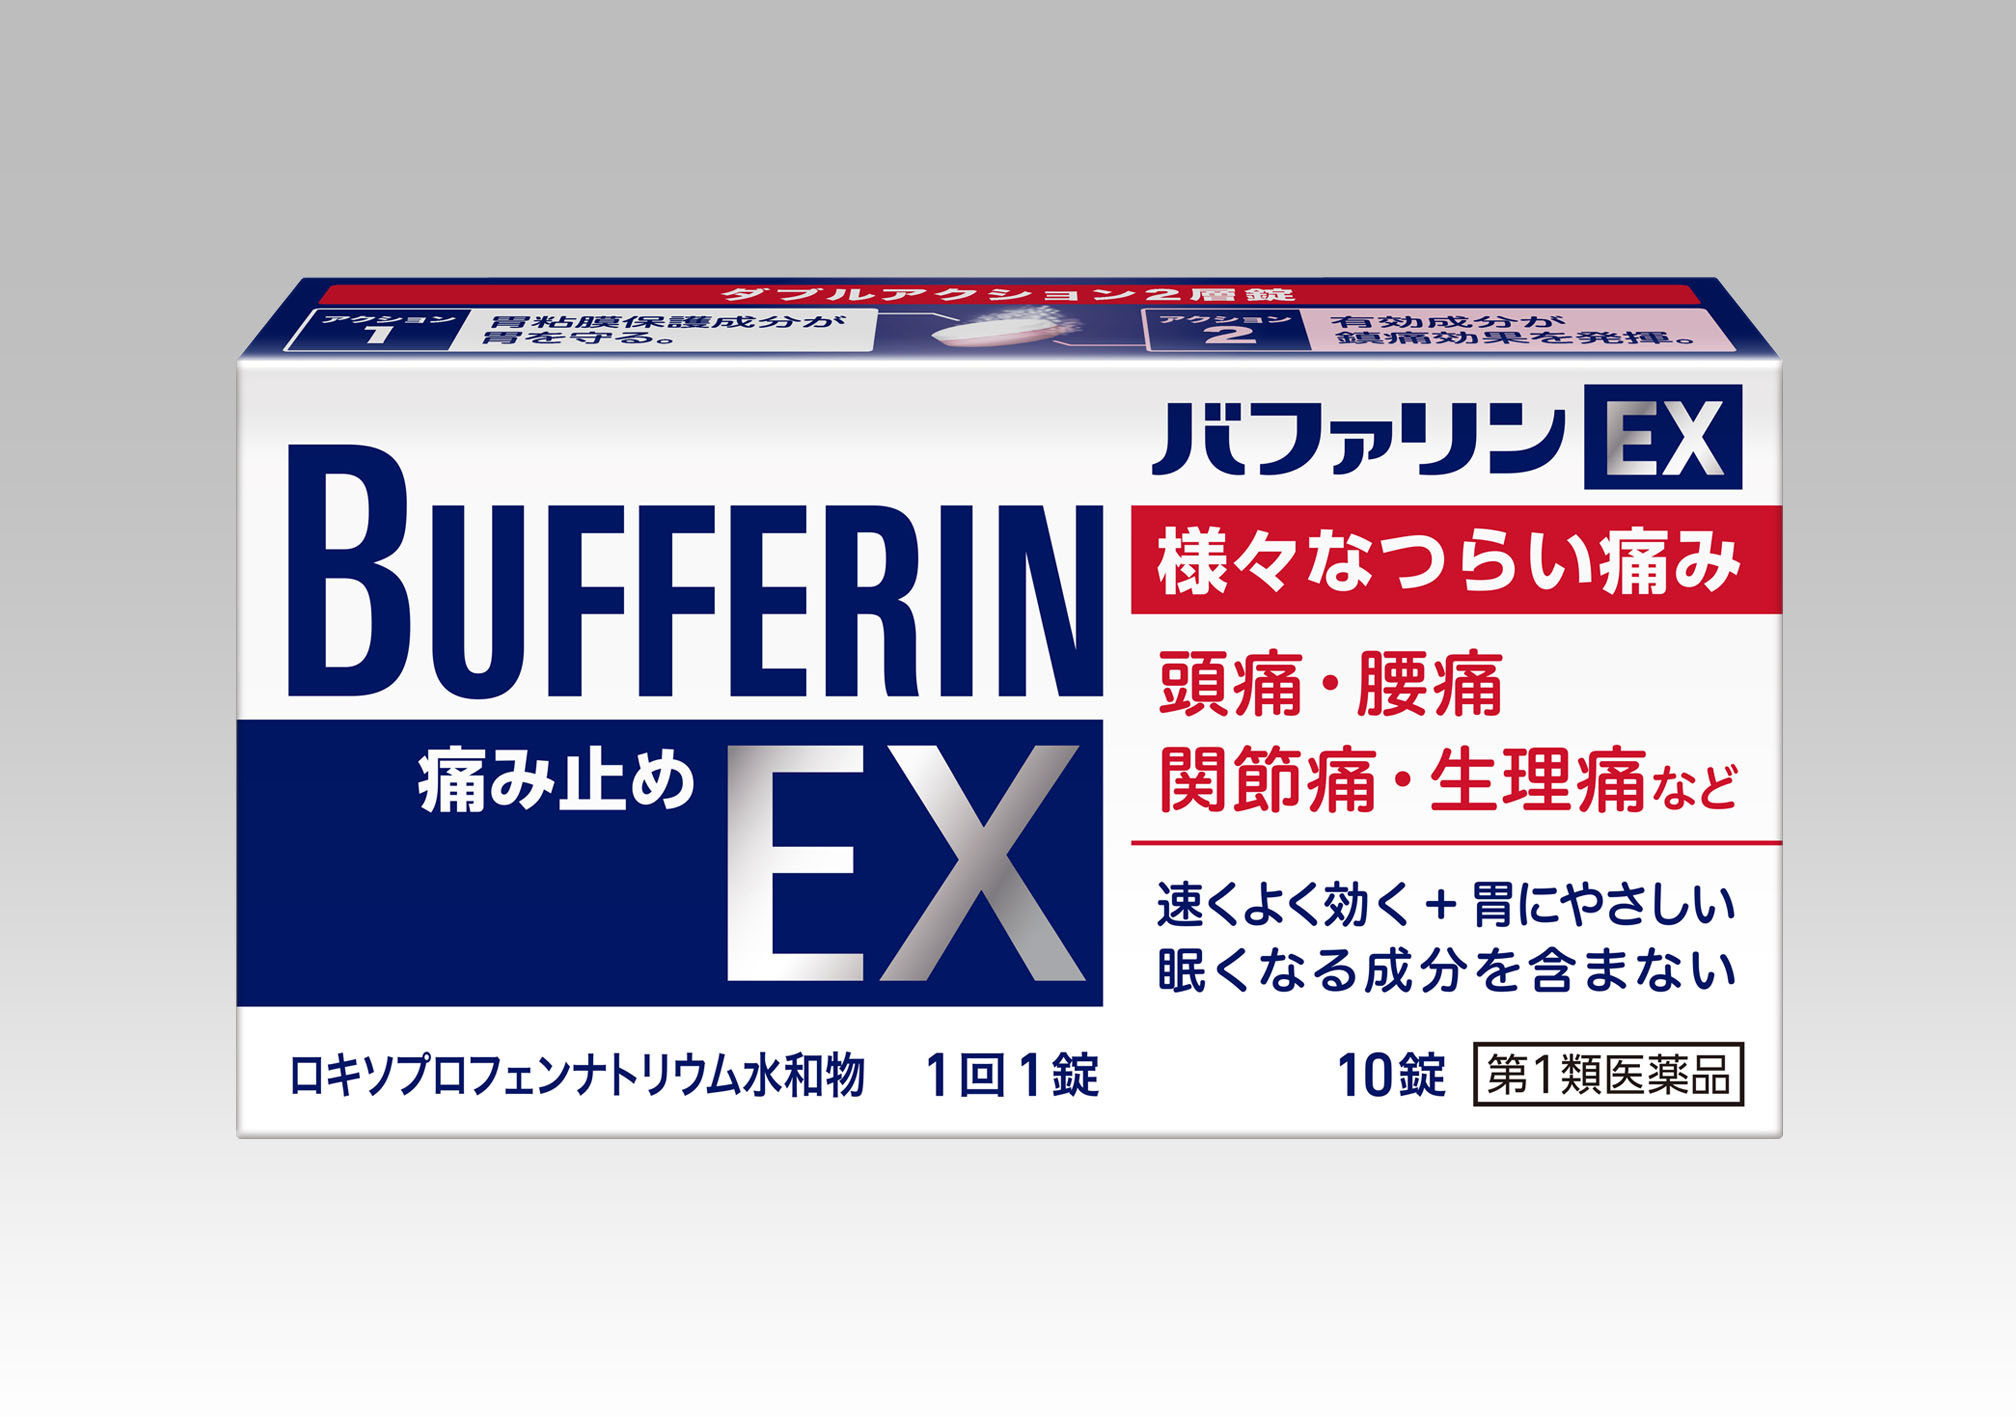 様々なつらい痛みに、優れた効き目の解熱鎮痛薬『バファリンEX』新発売｜ライオン株式会社のプレスリリース